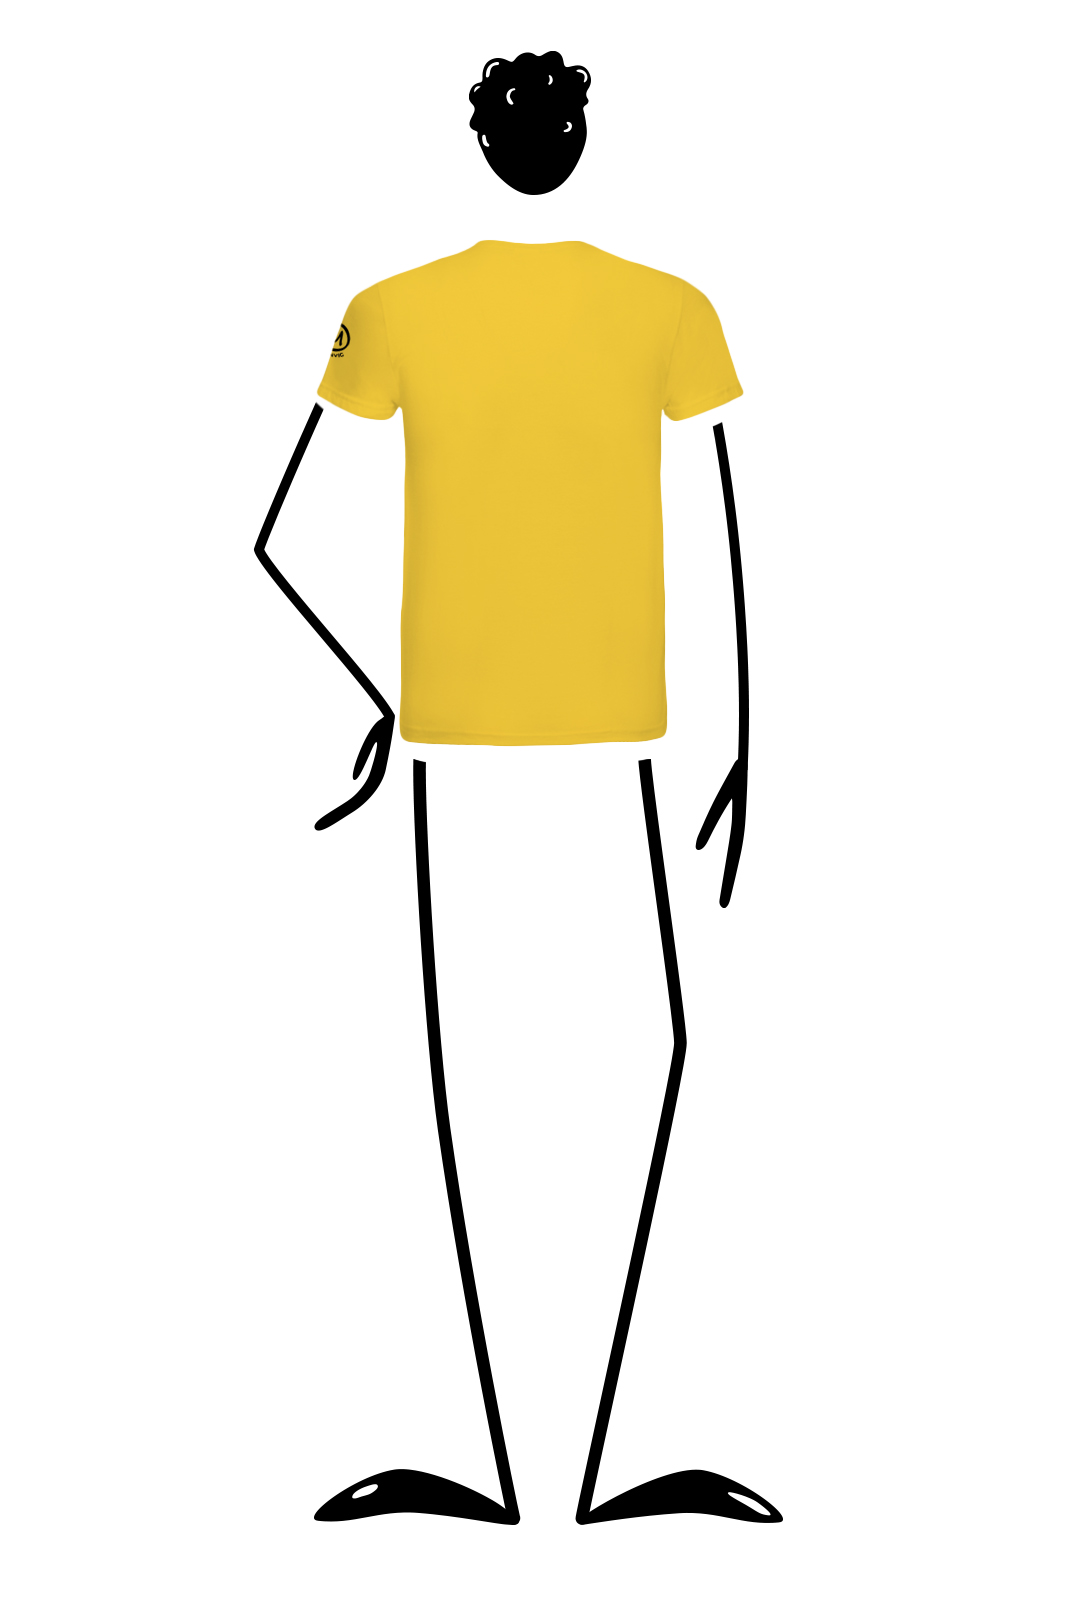 t-shirt homme jaune HASH Monvic